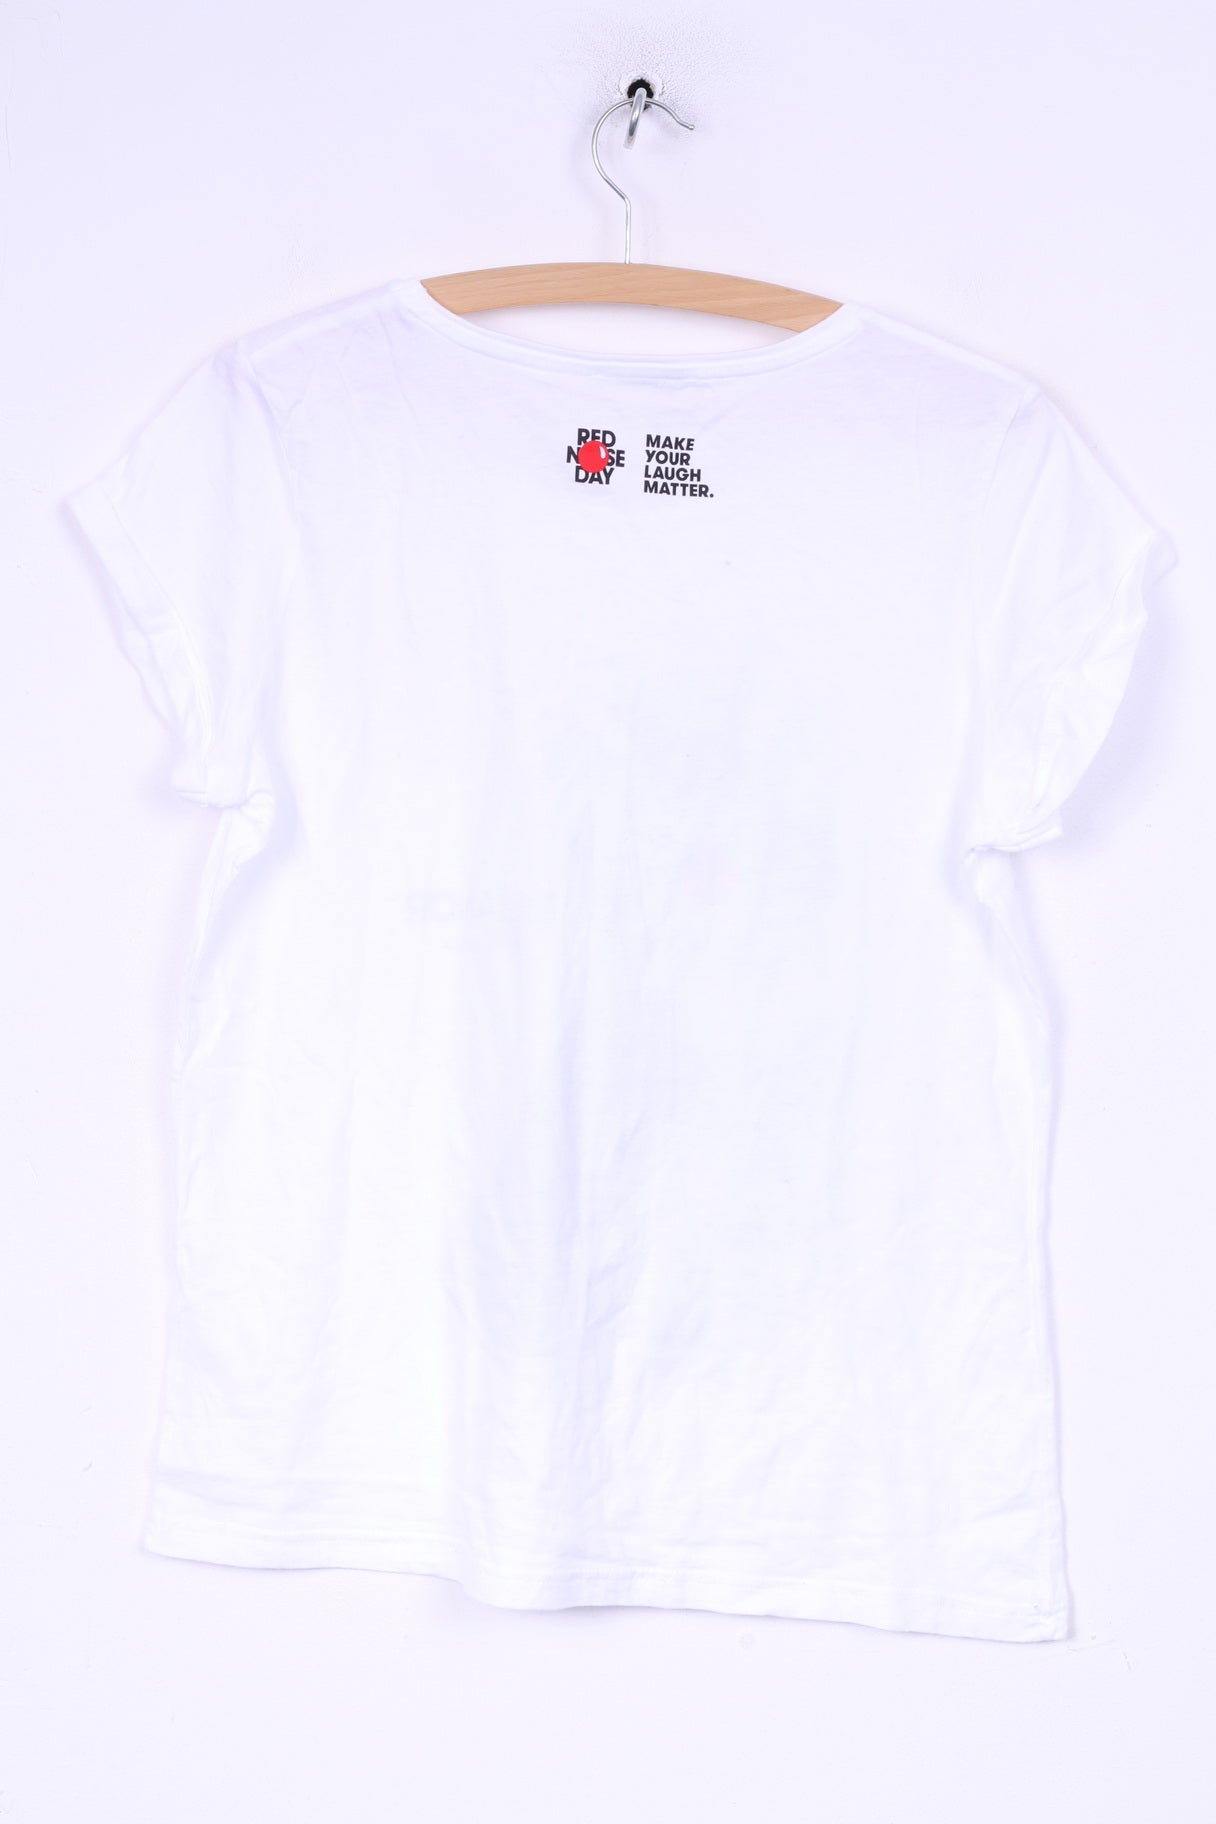 Comic Relief femmes L T-Shirt graphique Greated Eleanor par Rankin chat nez rouge coton blanc 